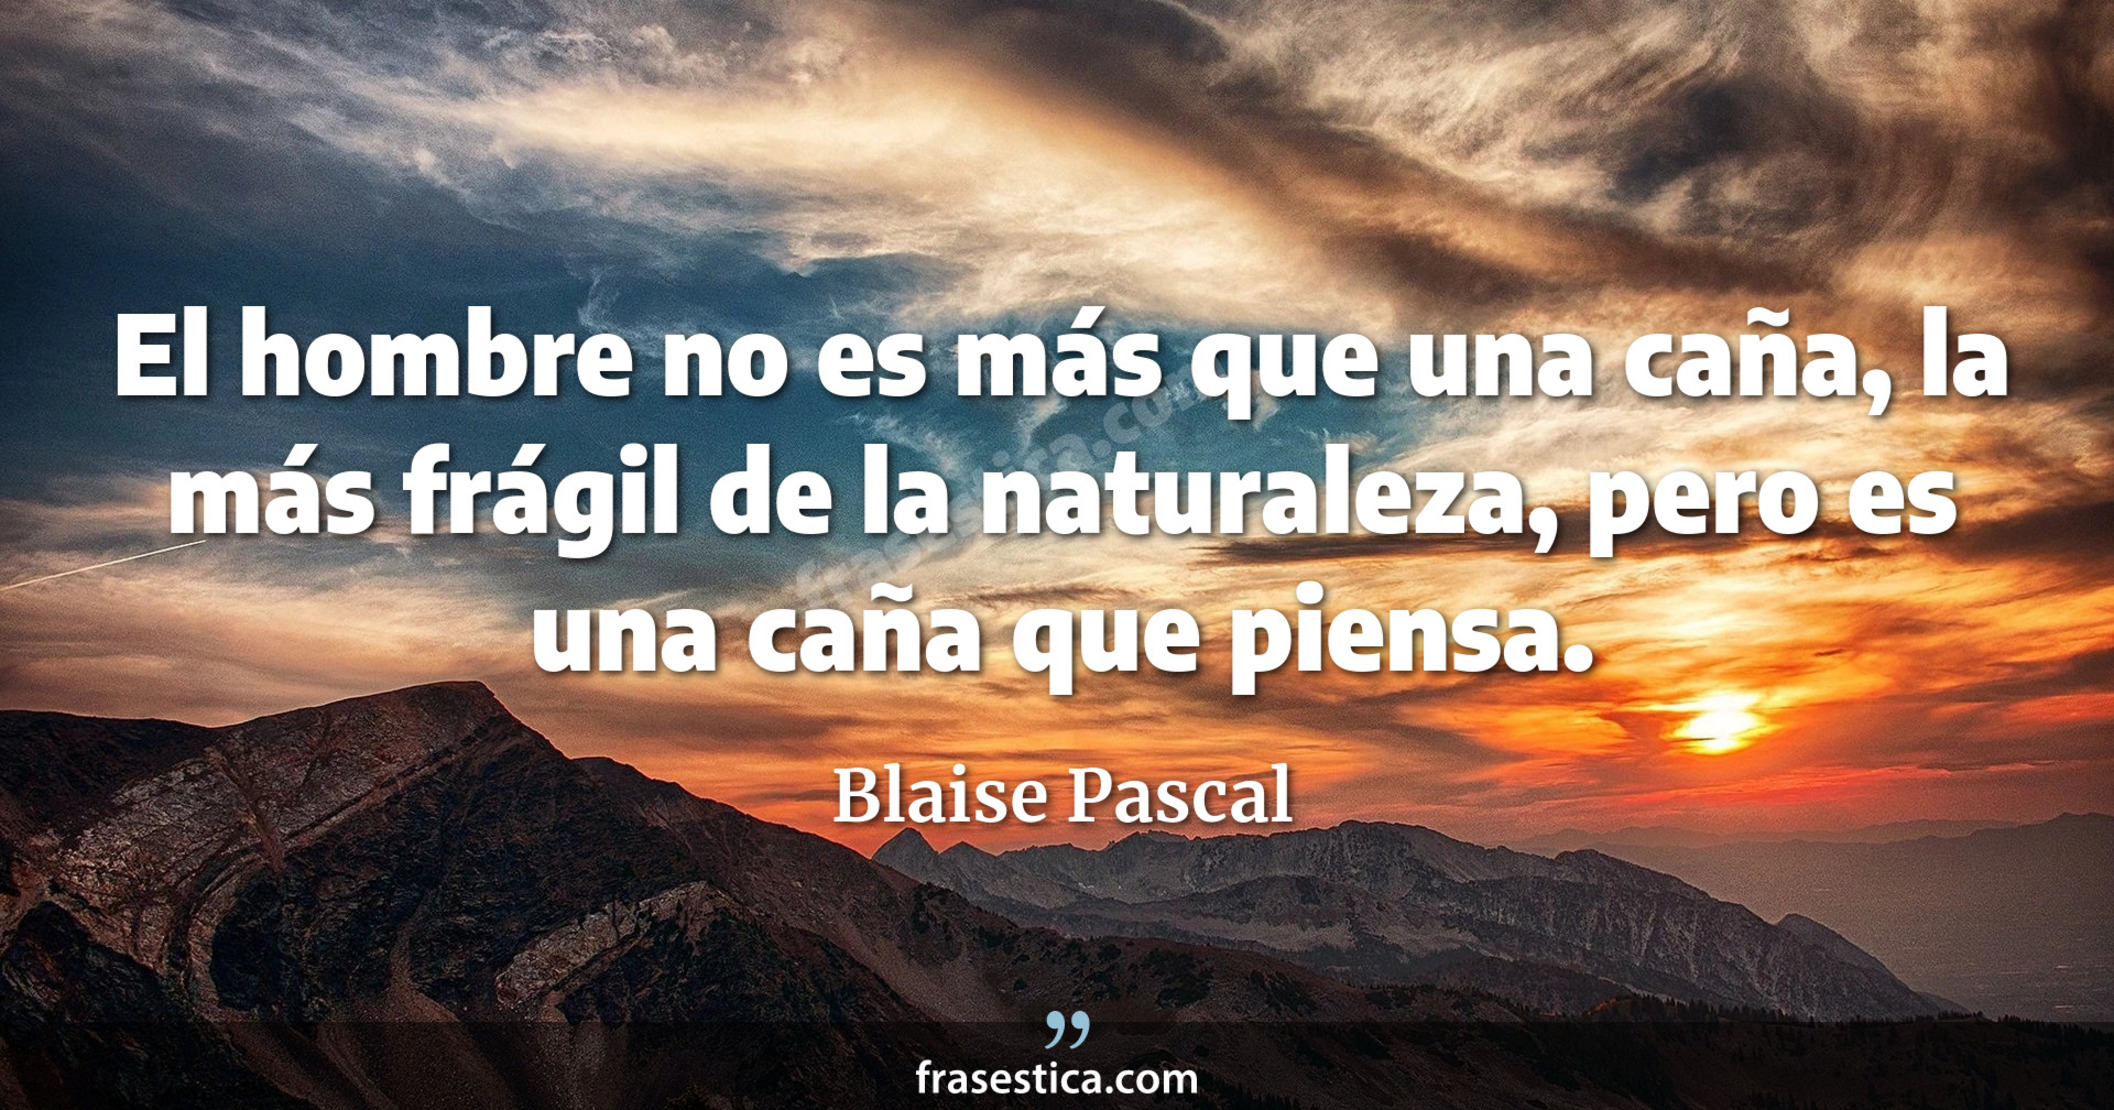 El hombre no es más que una caña, la más frágil de la naturaleza, pero es una caña que piensa. - Blaise Pascal